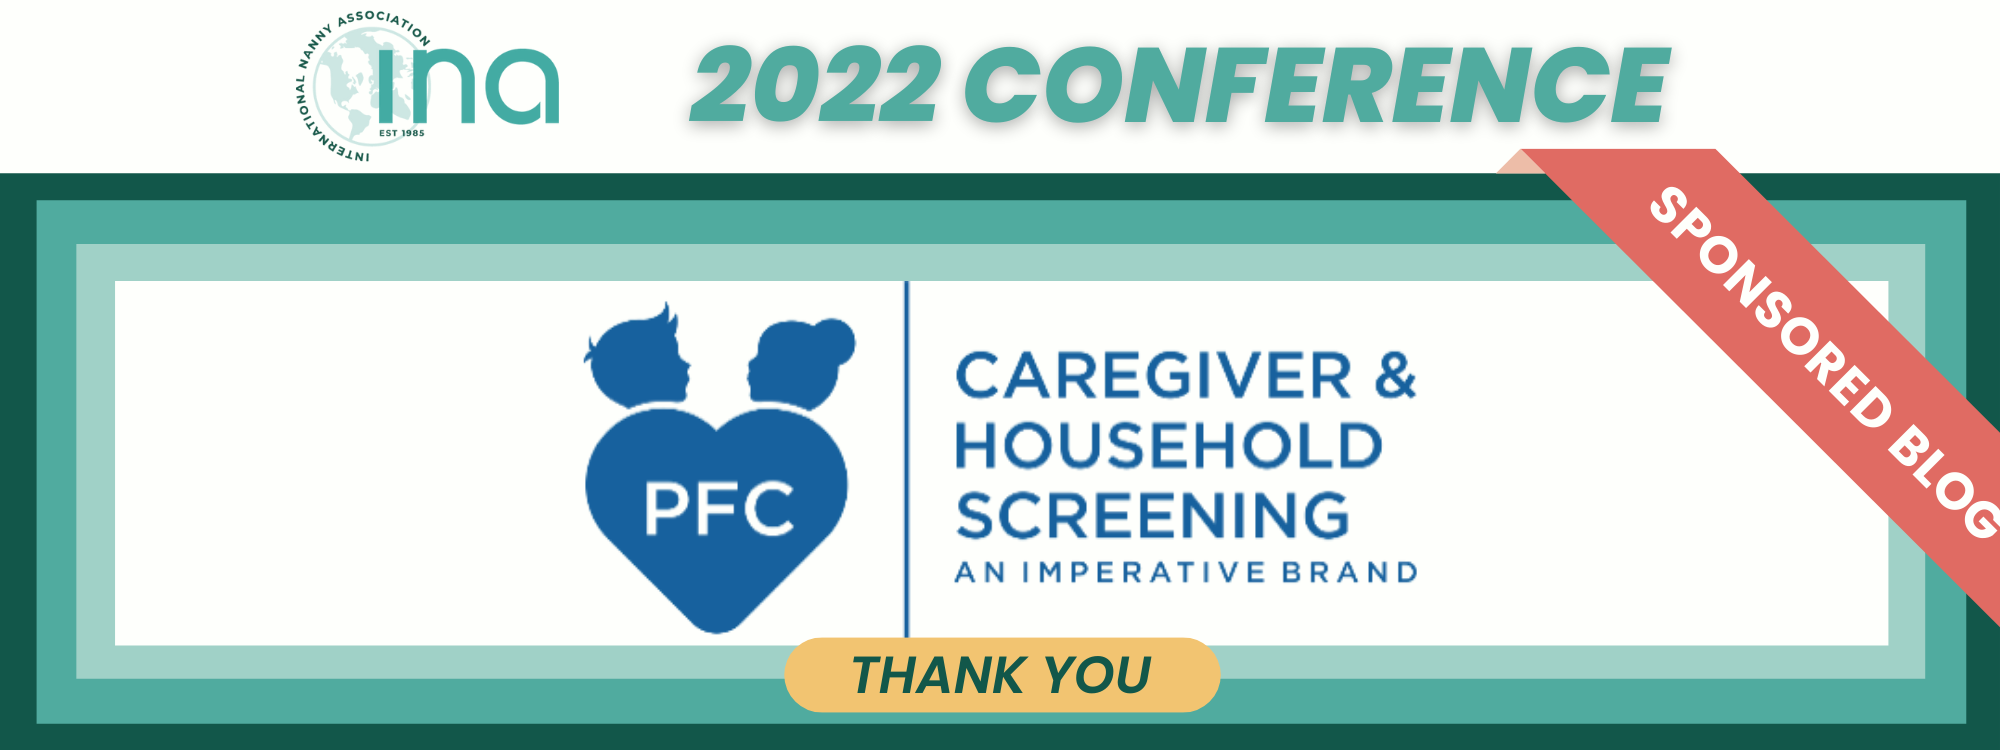 Sponsored Blog 2022 Conference PFC